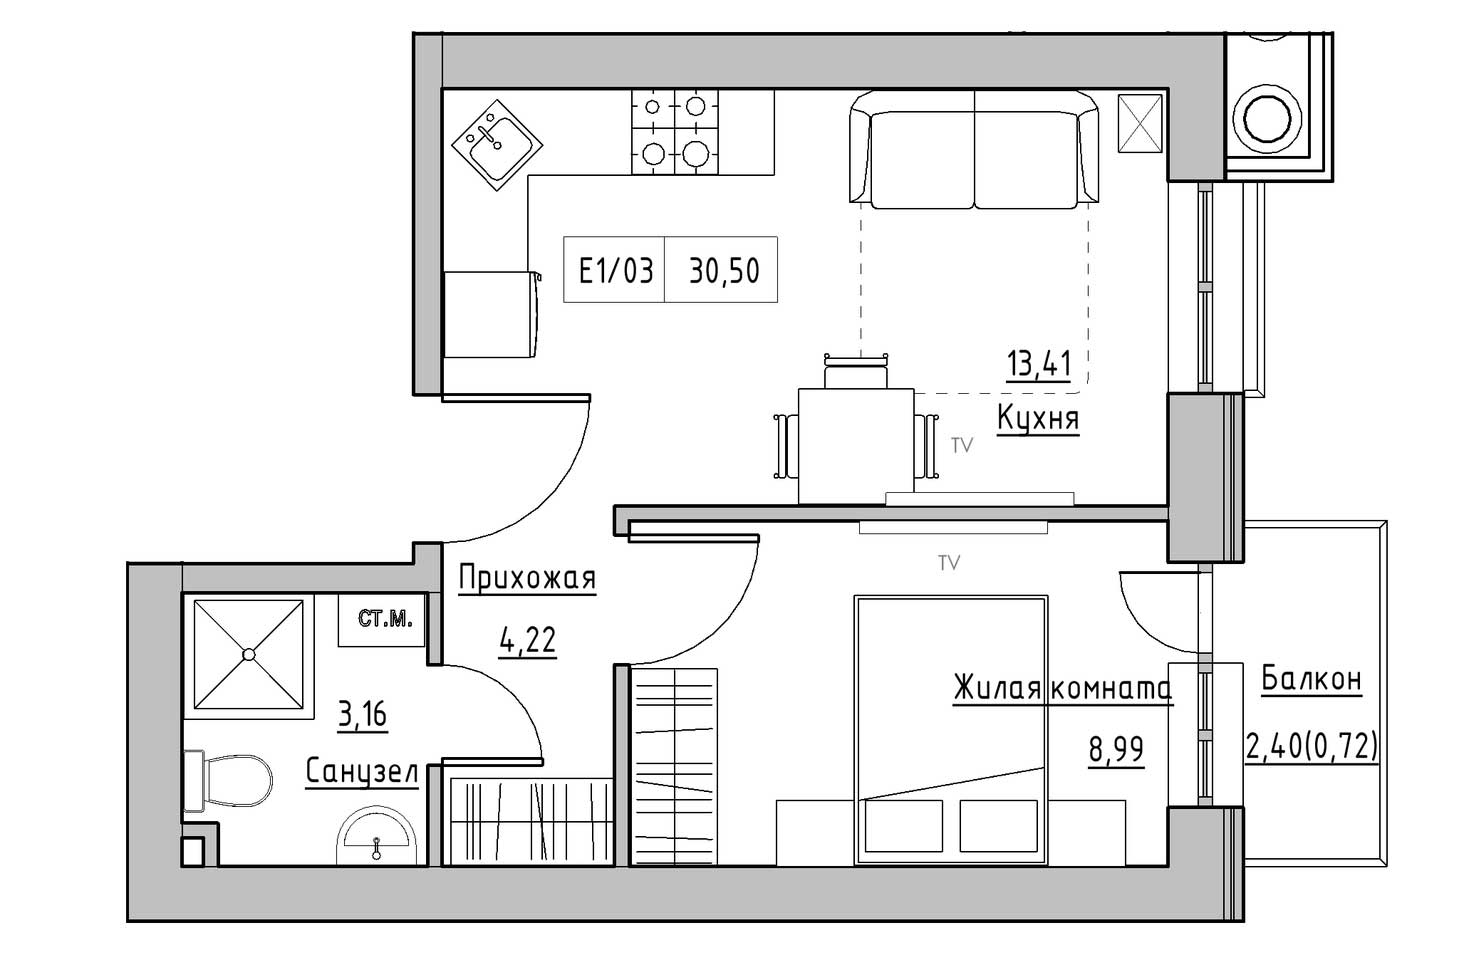 Планування 1-к квартира площею 30.5м2, KS-009-02/0002.